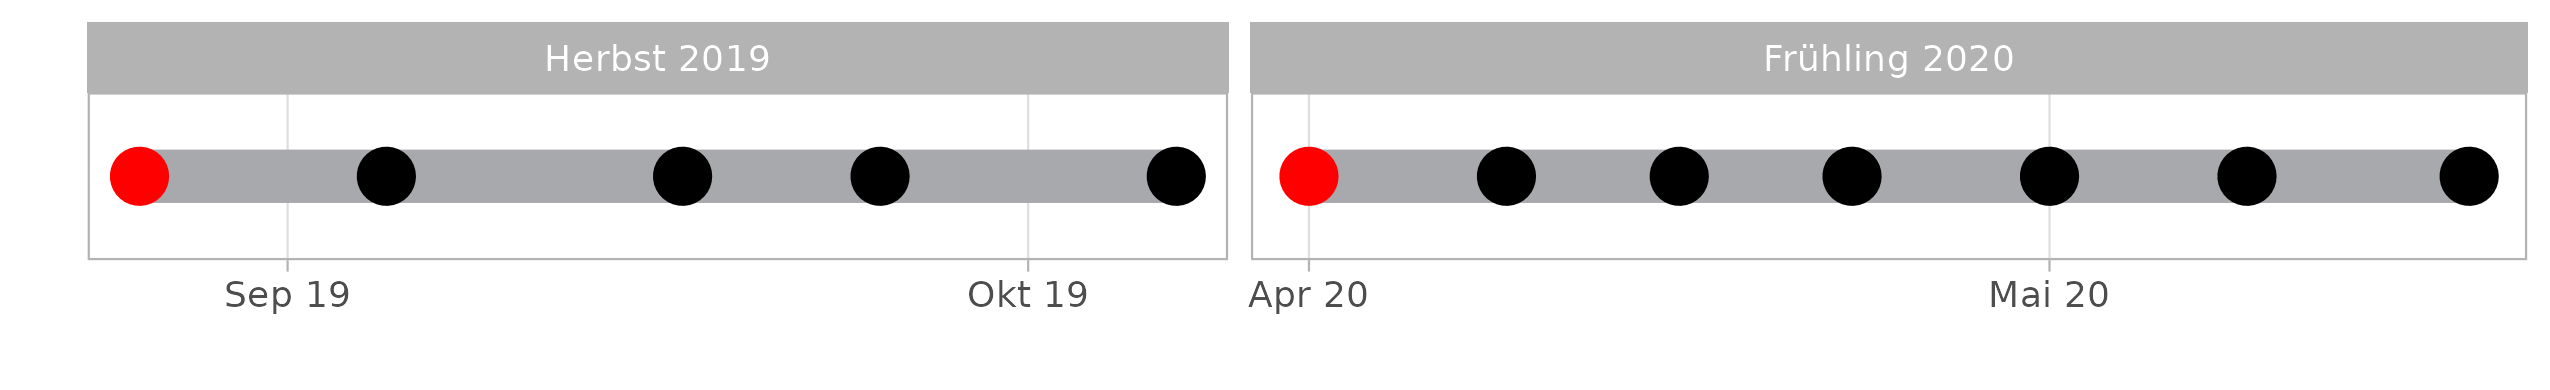 Visualisierung der Kontrollphase der beiden Erhebungsperioden. Der rote Punkt markiert das Ausbringen der Spurentunnel, die schwarzen Punkte stellen jeweils die Daten dar, an denen die Spurenpapiere ausgetauscht wurden. Aus logistischen Gründen wurden im Herbst 2019 nur 4 Kontrollgänge durchgeführt, was sich jedoch nicht auf die Resultate auswirken sollte.